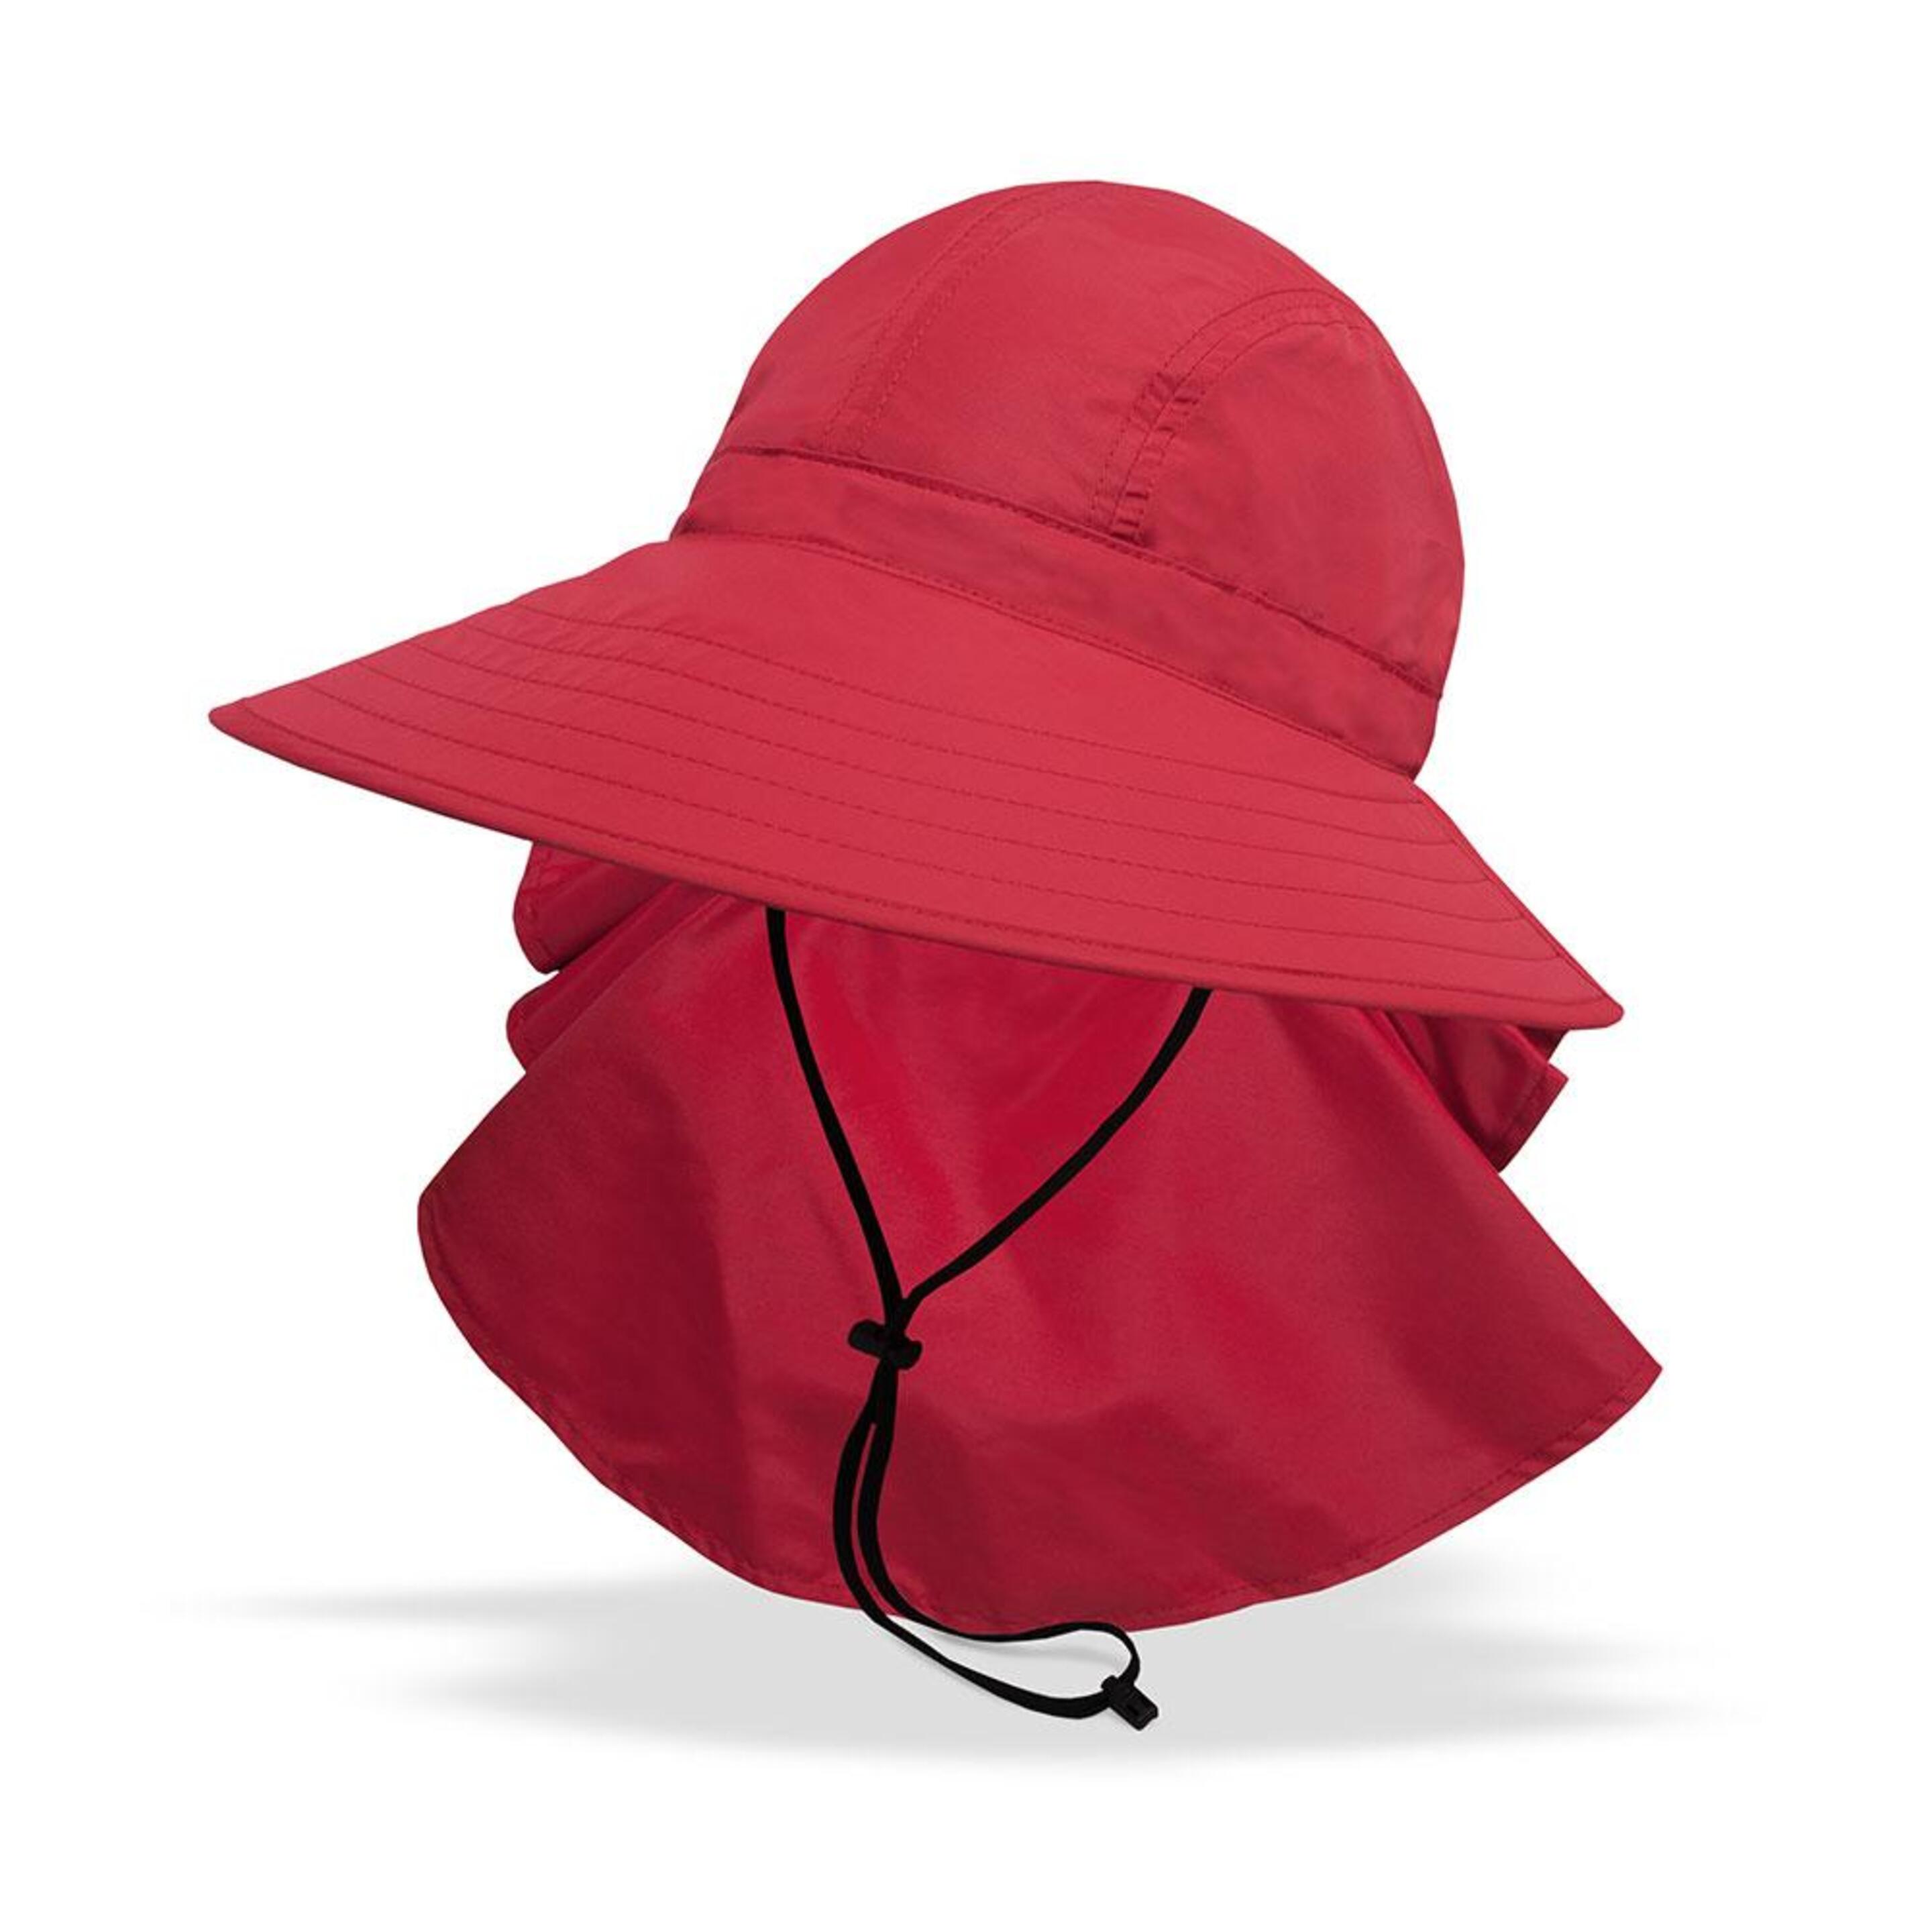 Sombrero Sundancer Sunday Afternoons Upf 50+ - Rojo - Playa, Pesca, Golf, Jardìn  MKP